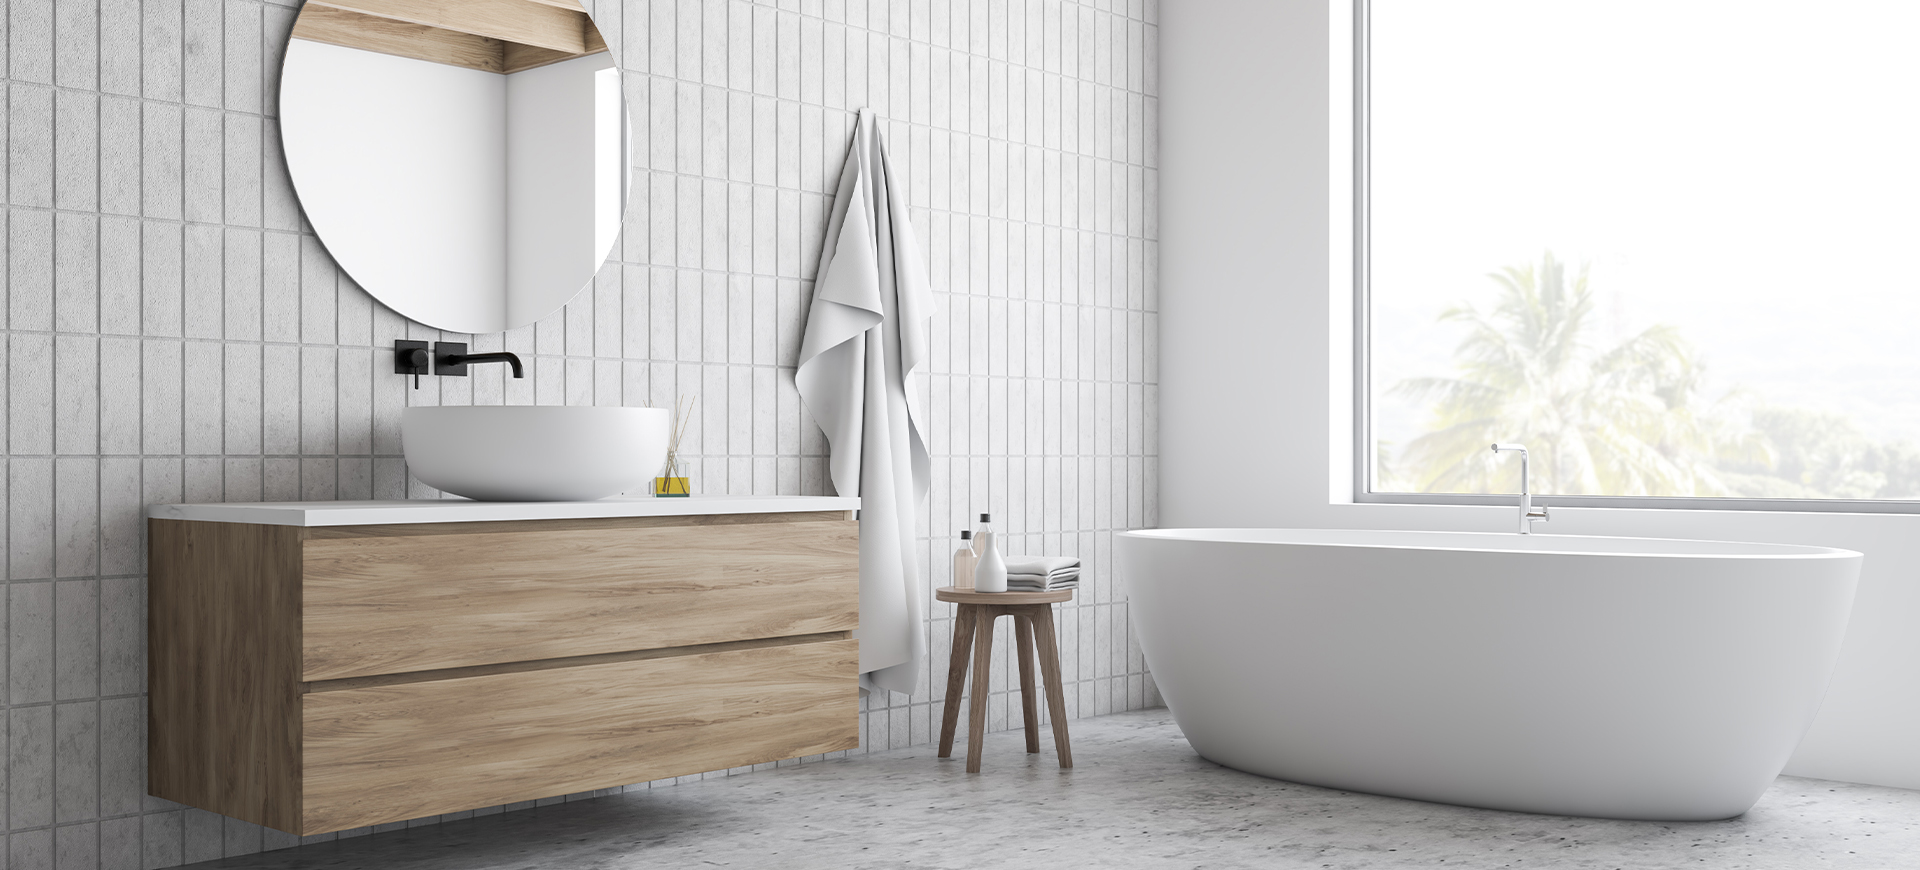 Waschtischunterschrank aus hellem Holz mit zwei Schubladen und weißer Ablagefläche in einem großen Bad mit freistehender Wanne